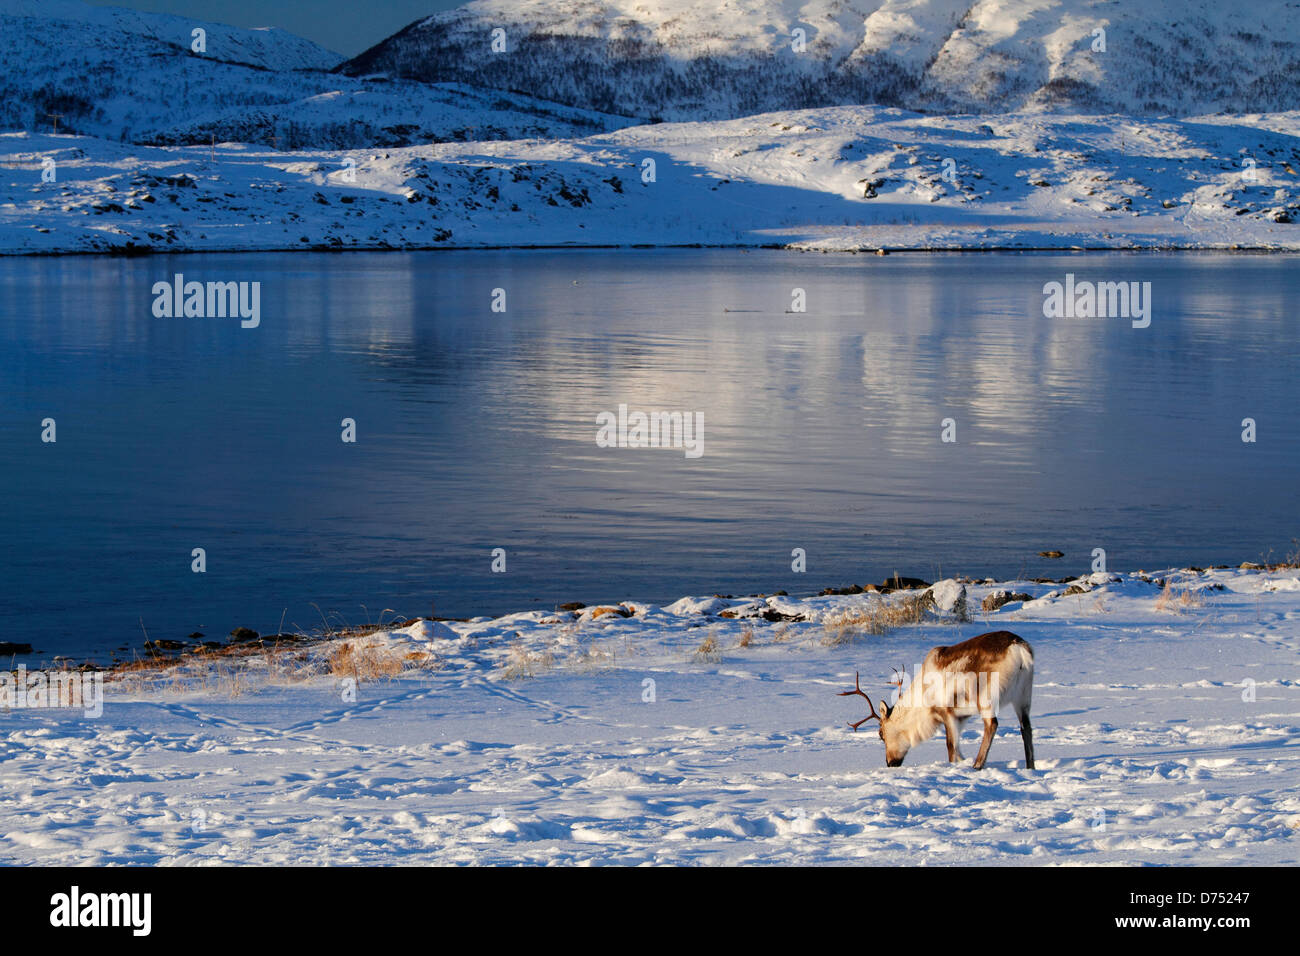 A reindeer eating in Norwegian fjords, near Tromsø, Norway. Stock Photo